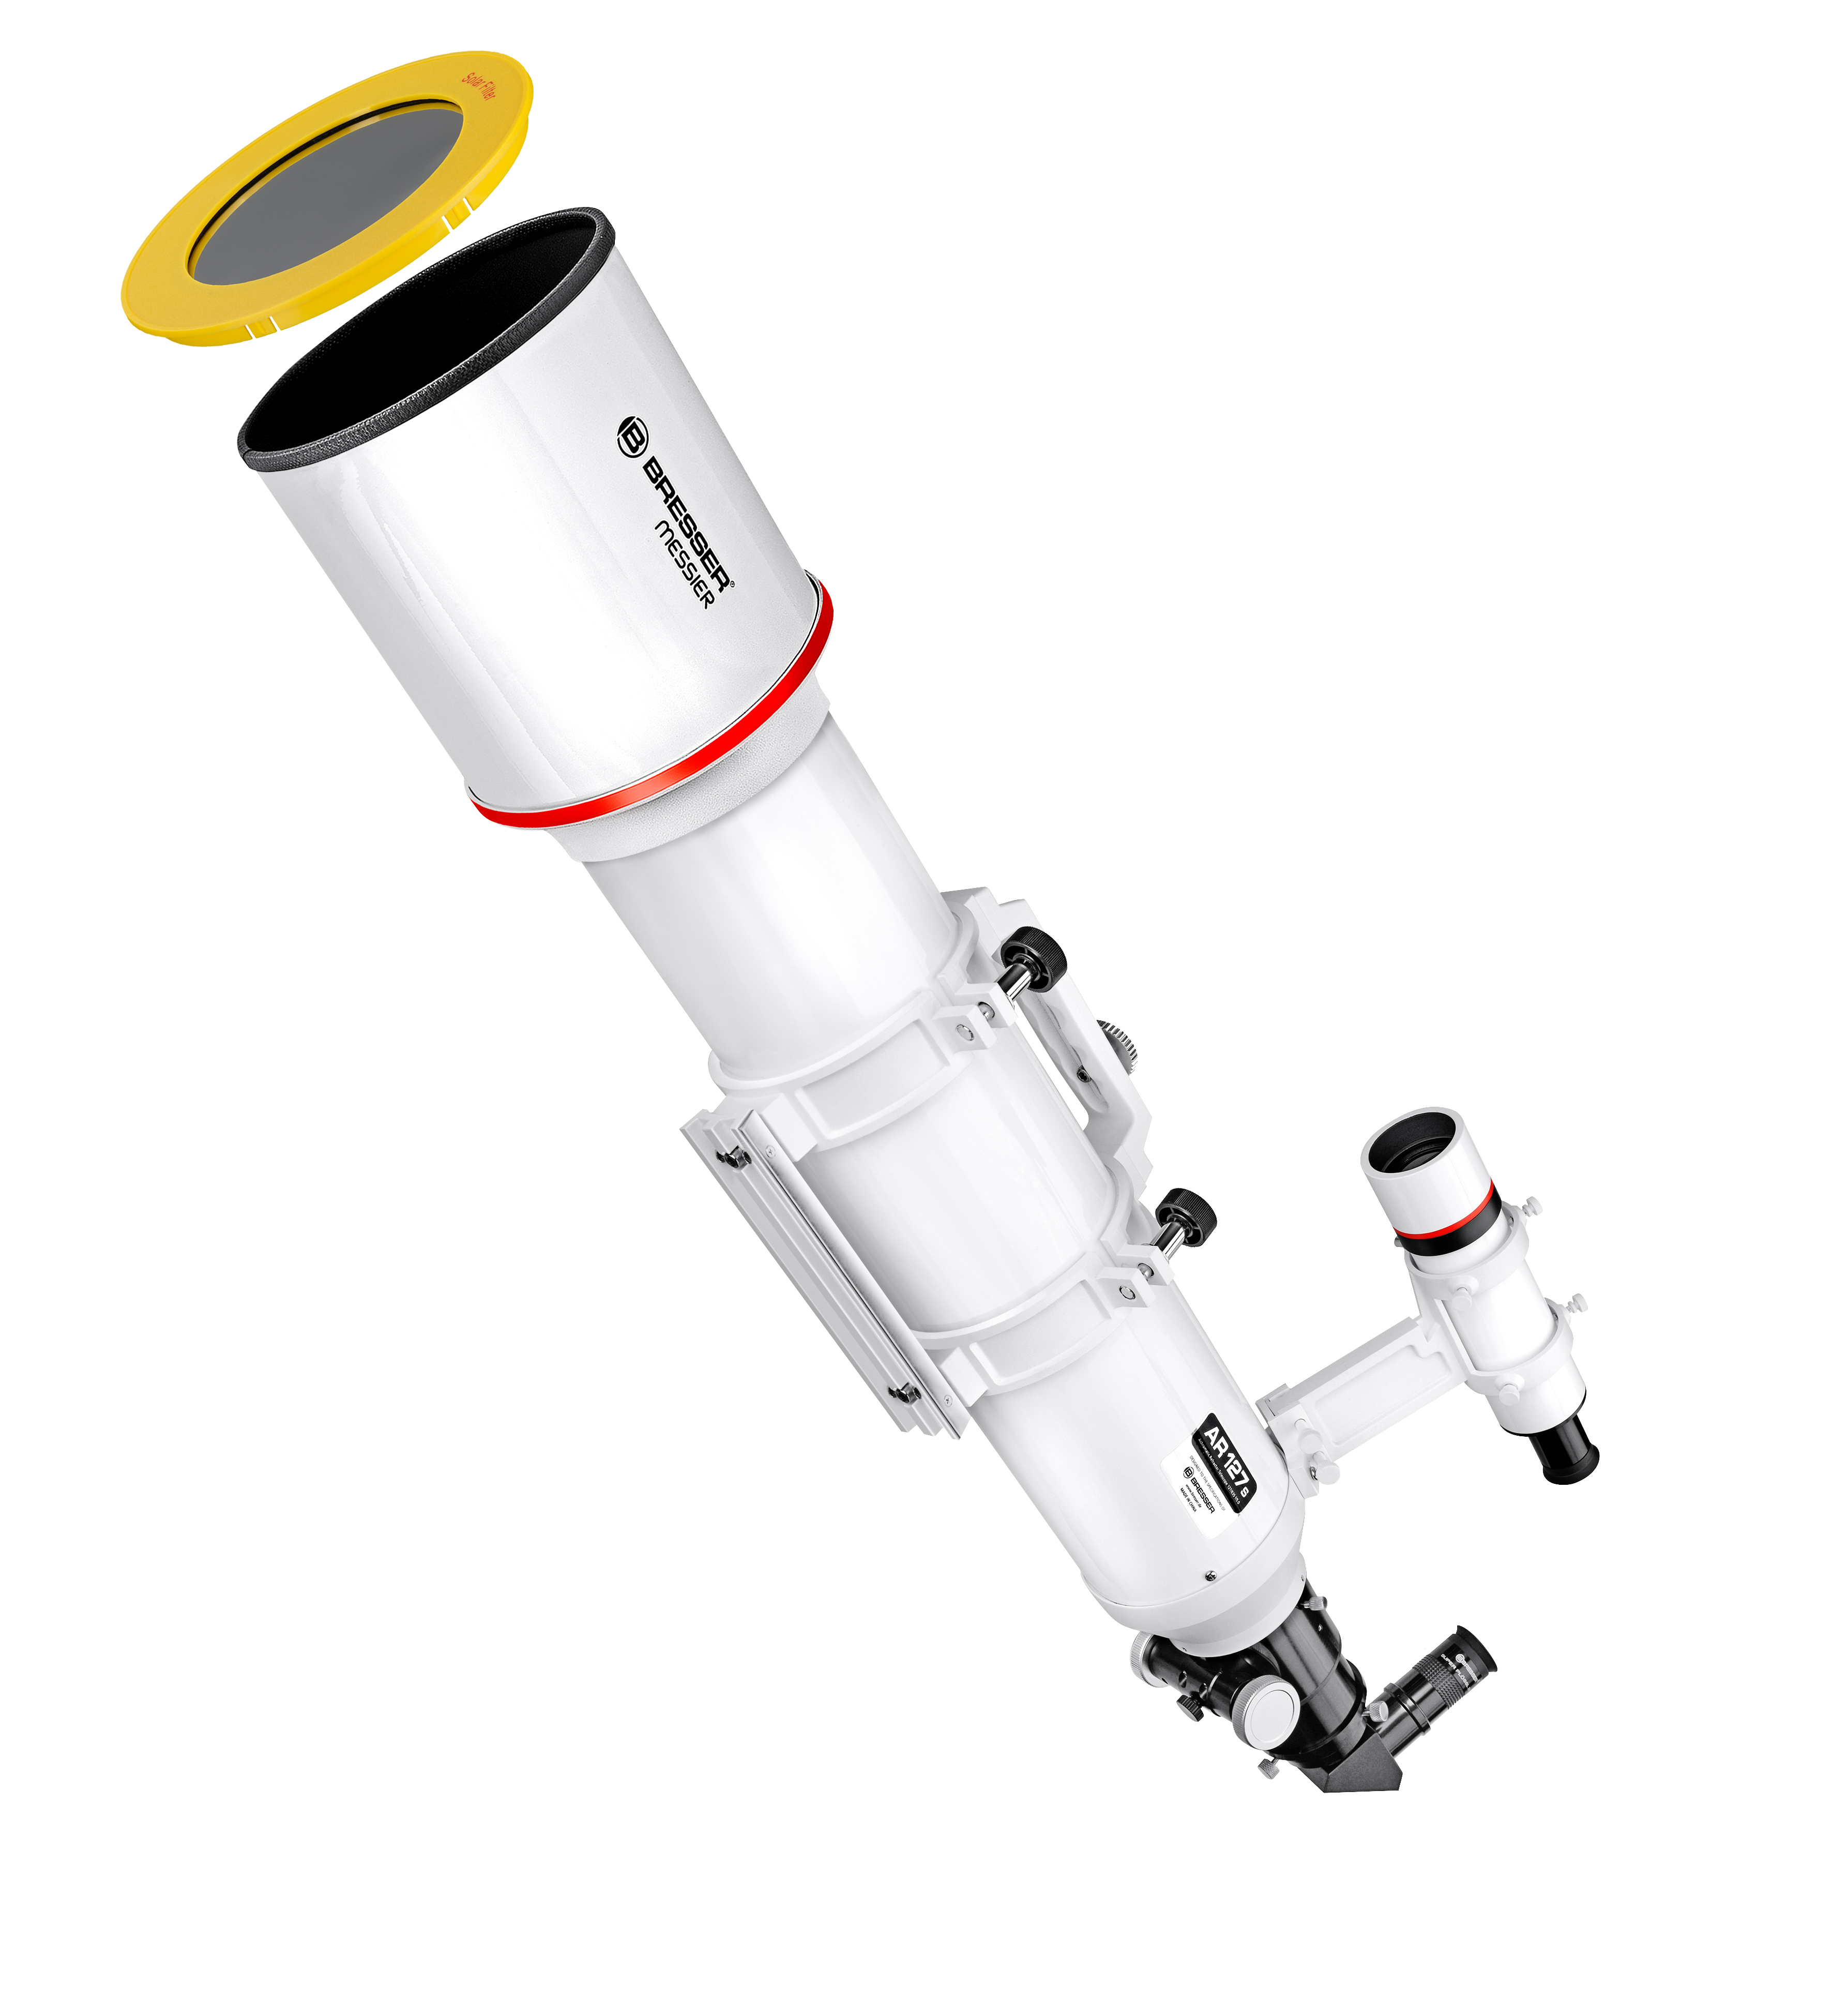 BRESSER Messier AR-127S/635 OTA Tubo ottico Hexafoc